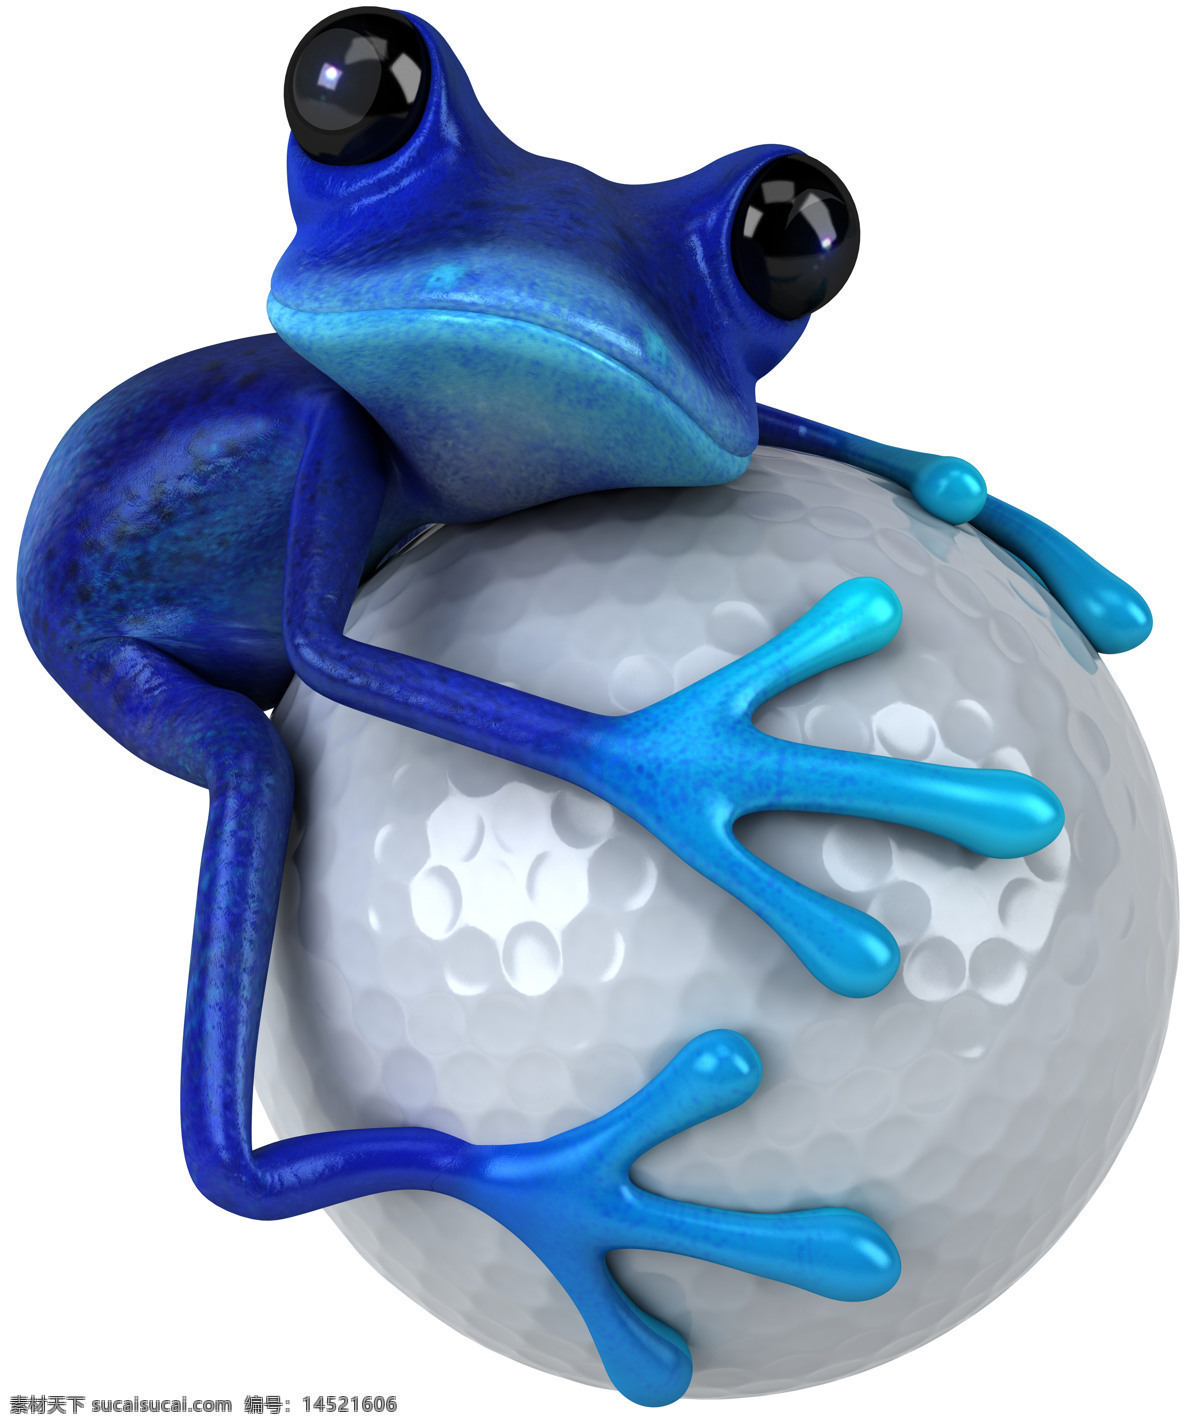 抱 高尔夫球 青蛙 蓝色青蛙 卡通青蛙 插画 3d模型 卡通动物 生物世界